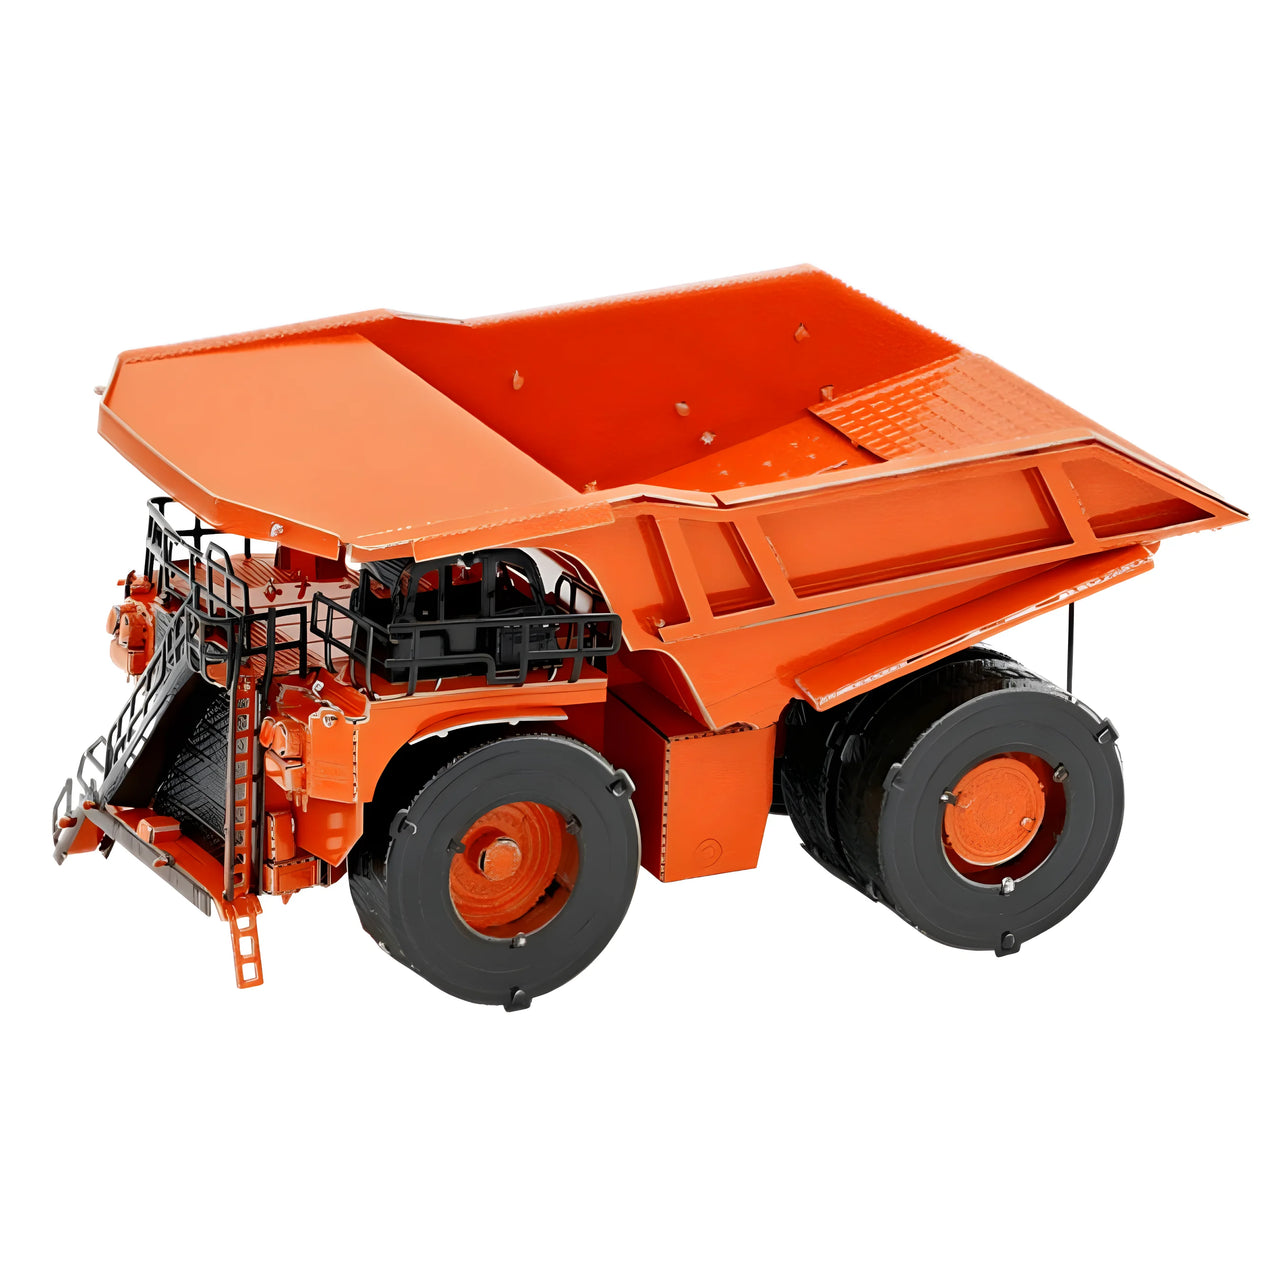 FMW182 खनन ट्रक (निर्माण योग्य) 